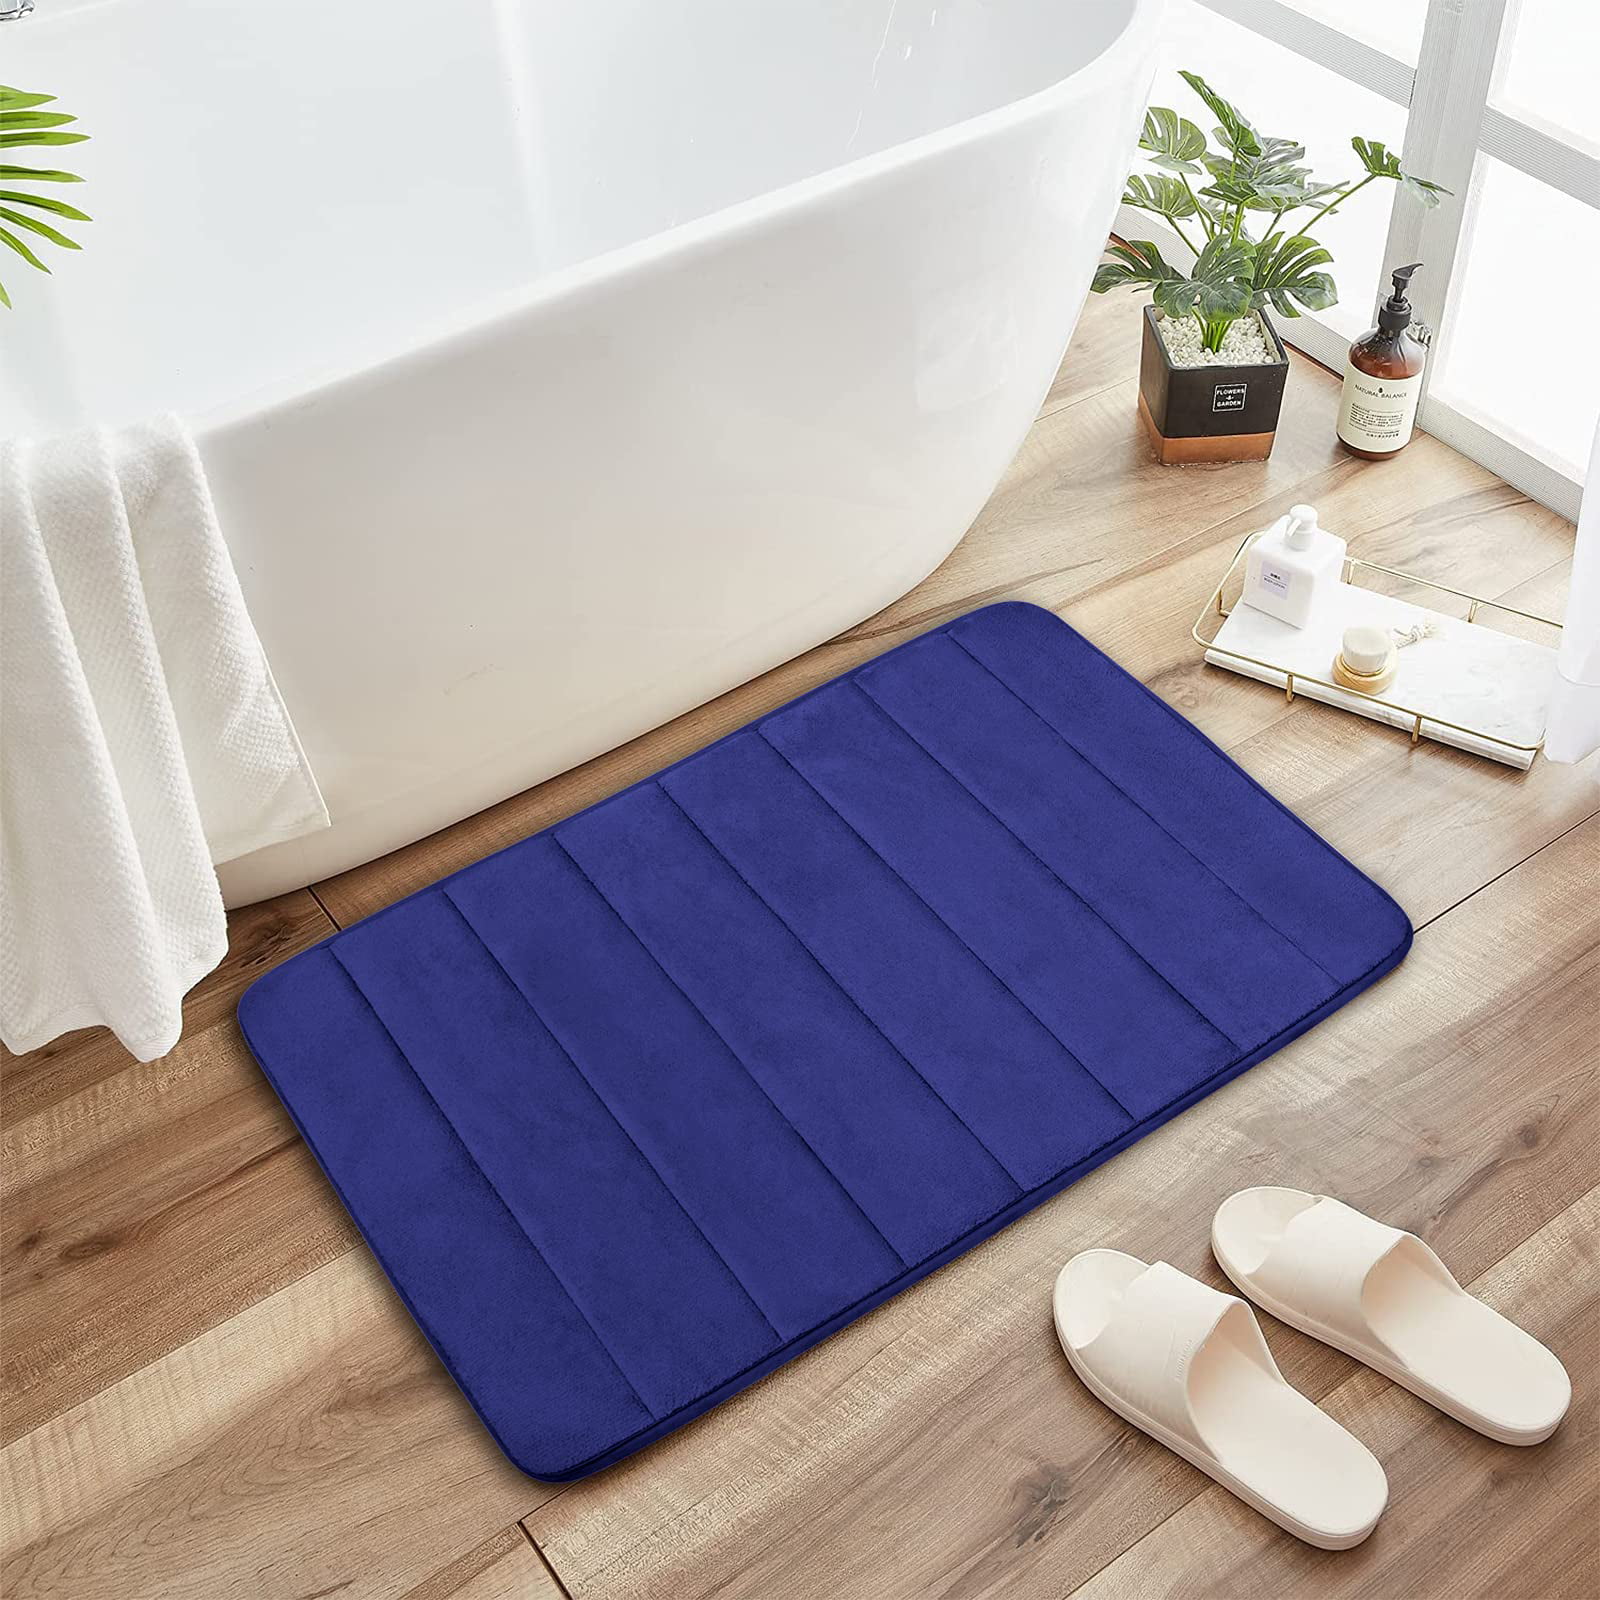 Non-slip Absorbent Memory Foam Bath Bathroom Bedroom Floor Rug Shower Soft Mat 